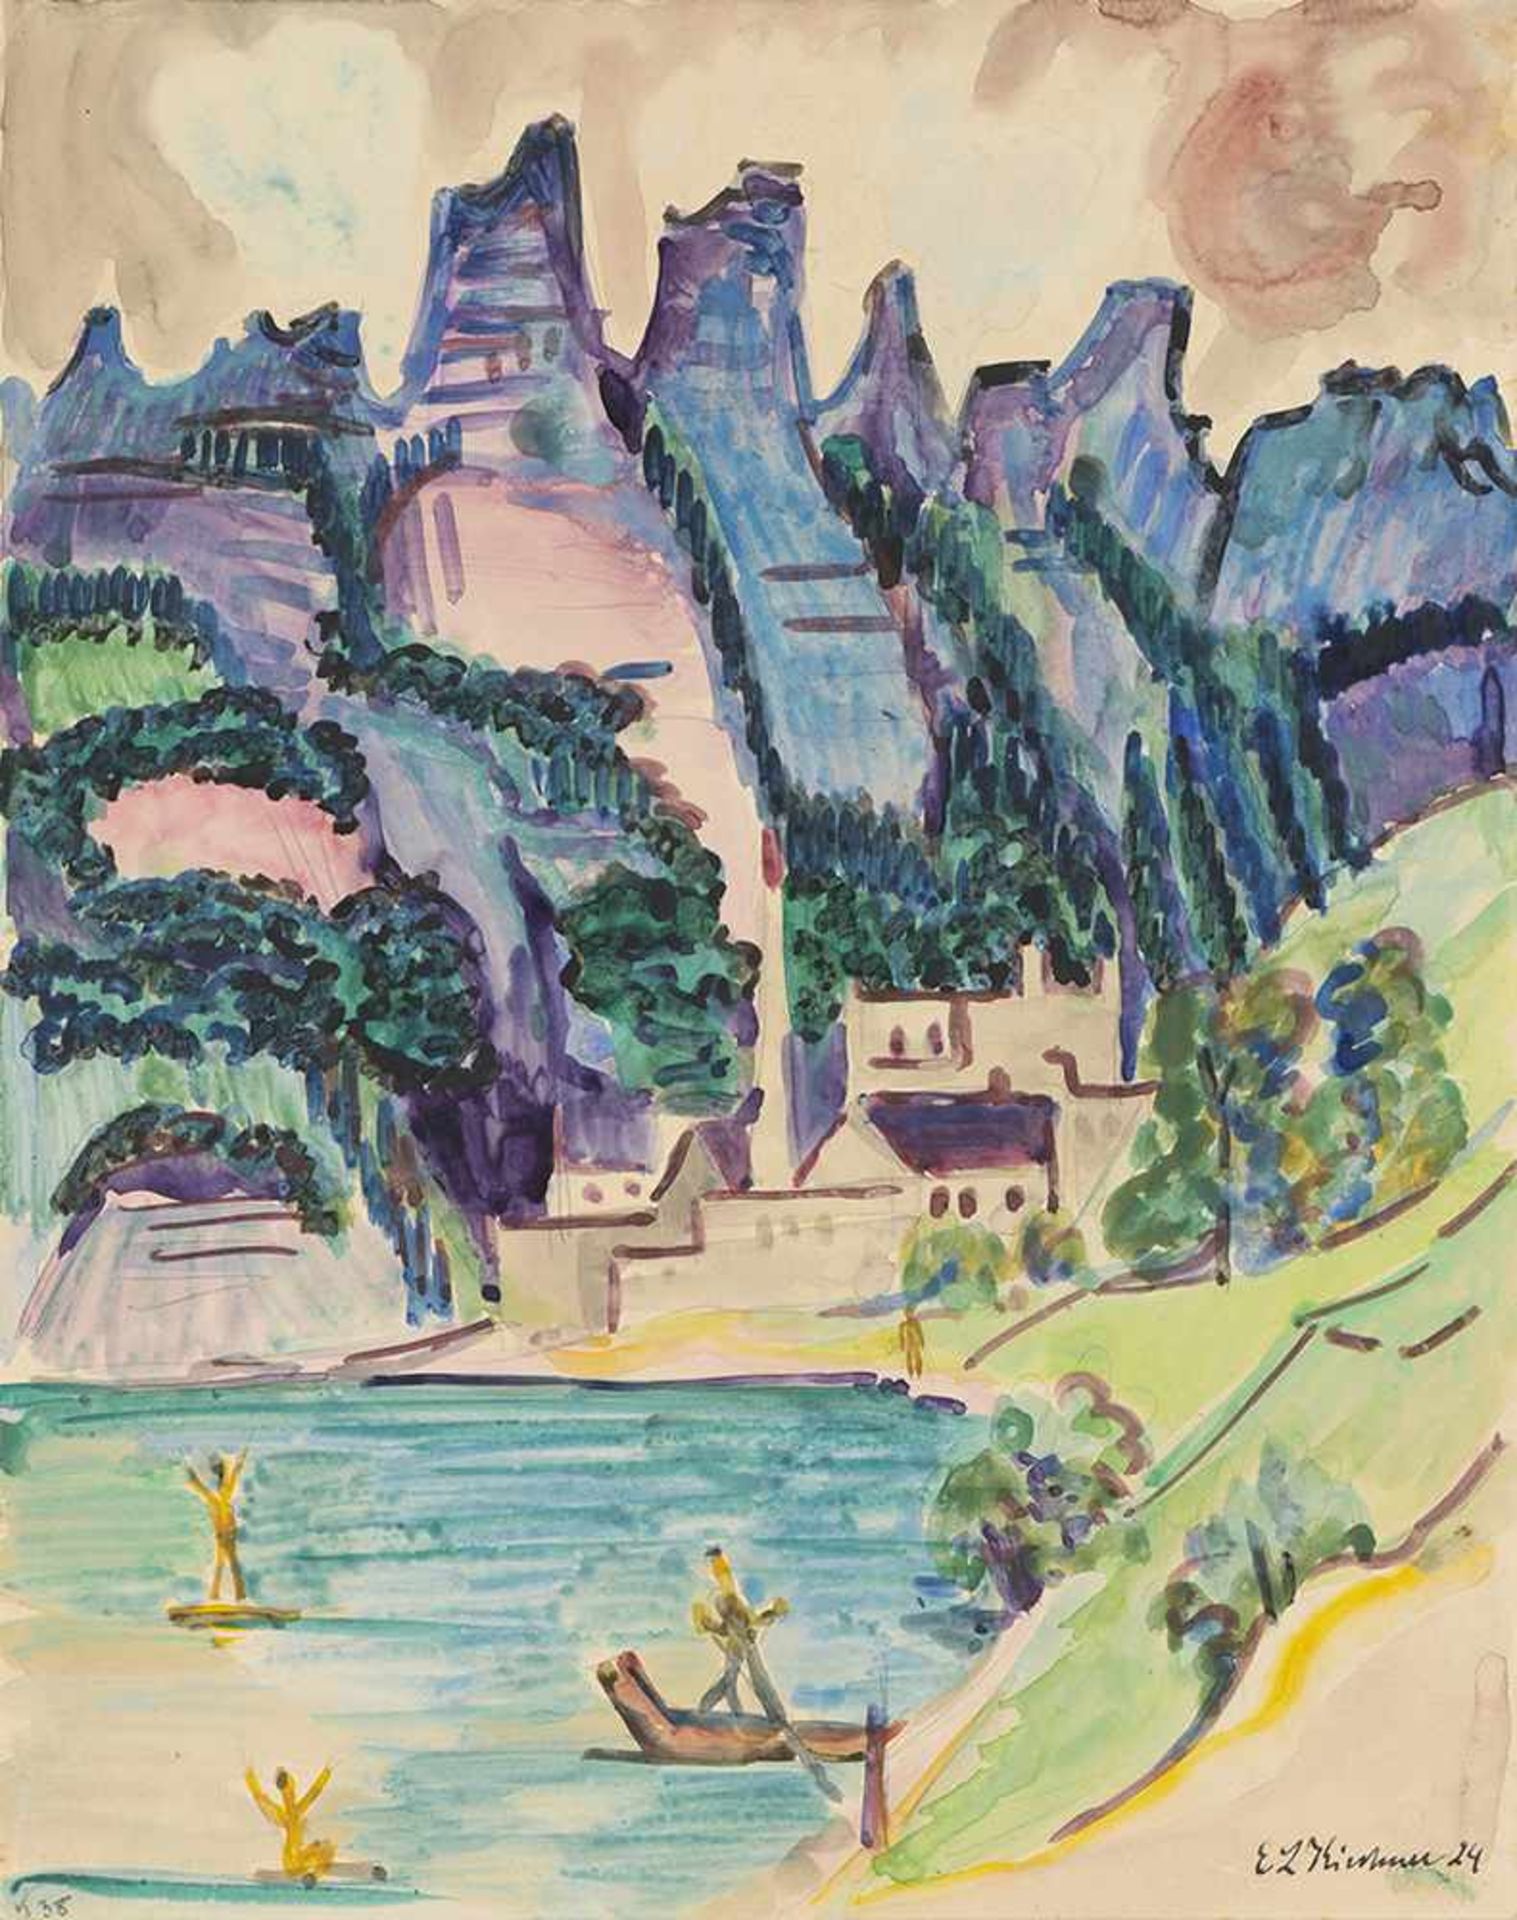 Kirchner, Ernst LudwigAschaffenburg, 1880 - Frauenkirch, 193842 x 33 cm,o.R."Gebirgslandschaft mit